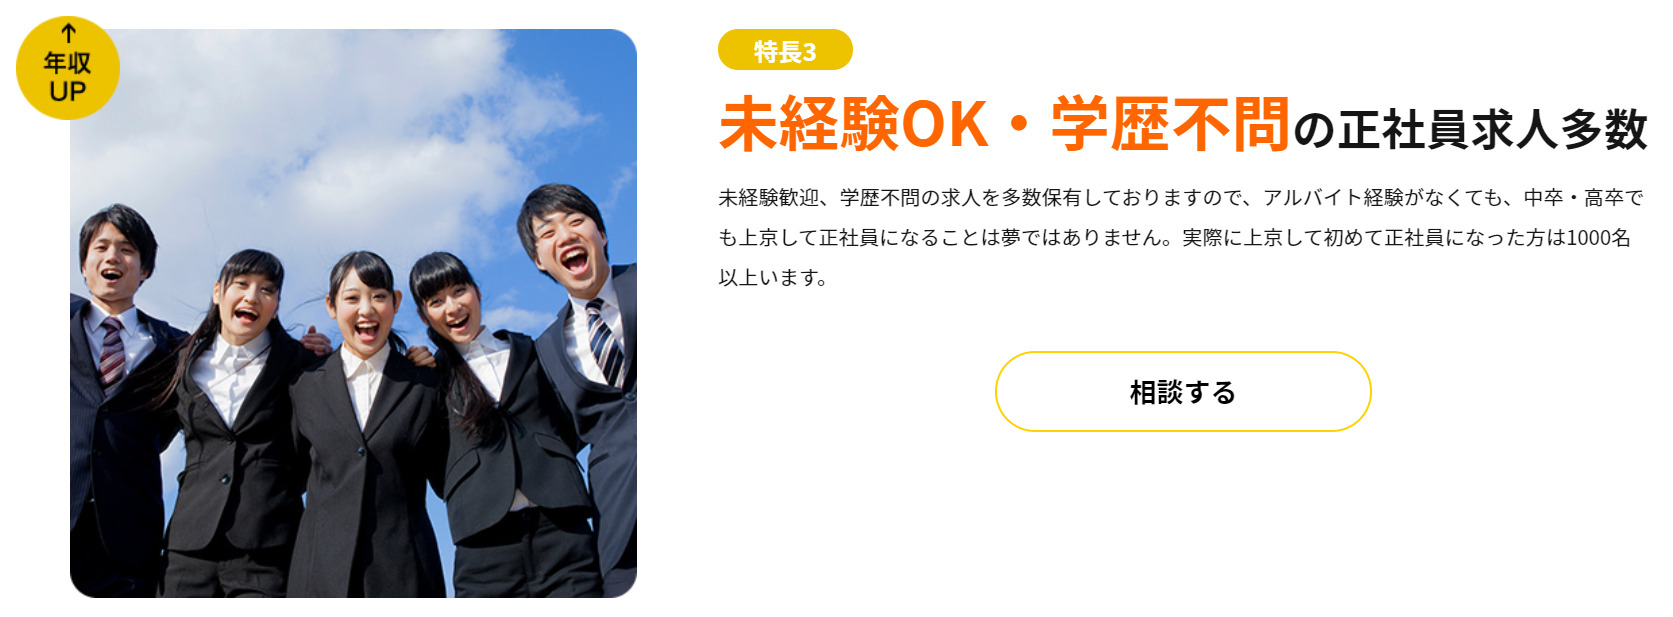 miyako-ticket-Inexperienced-ok.jpg